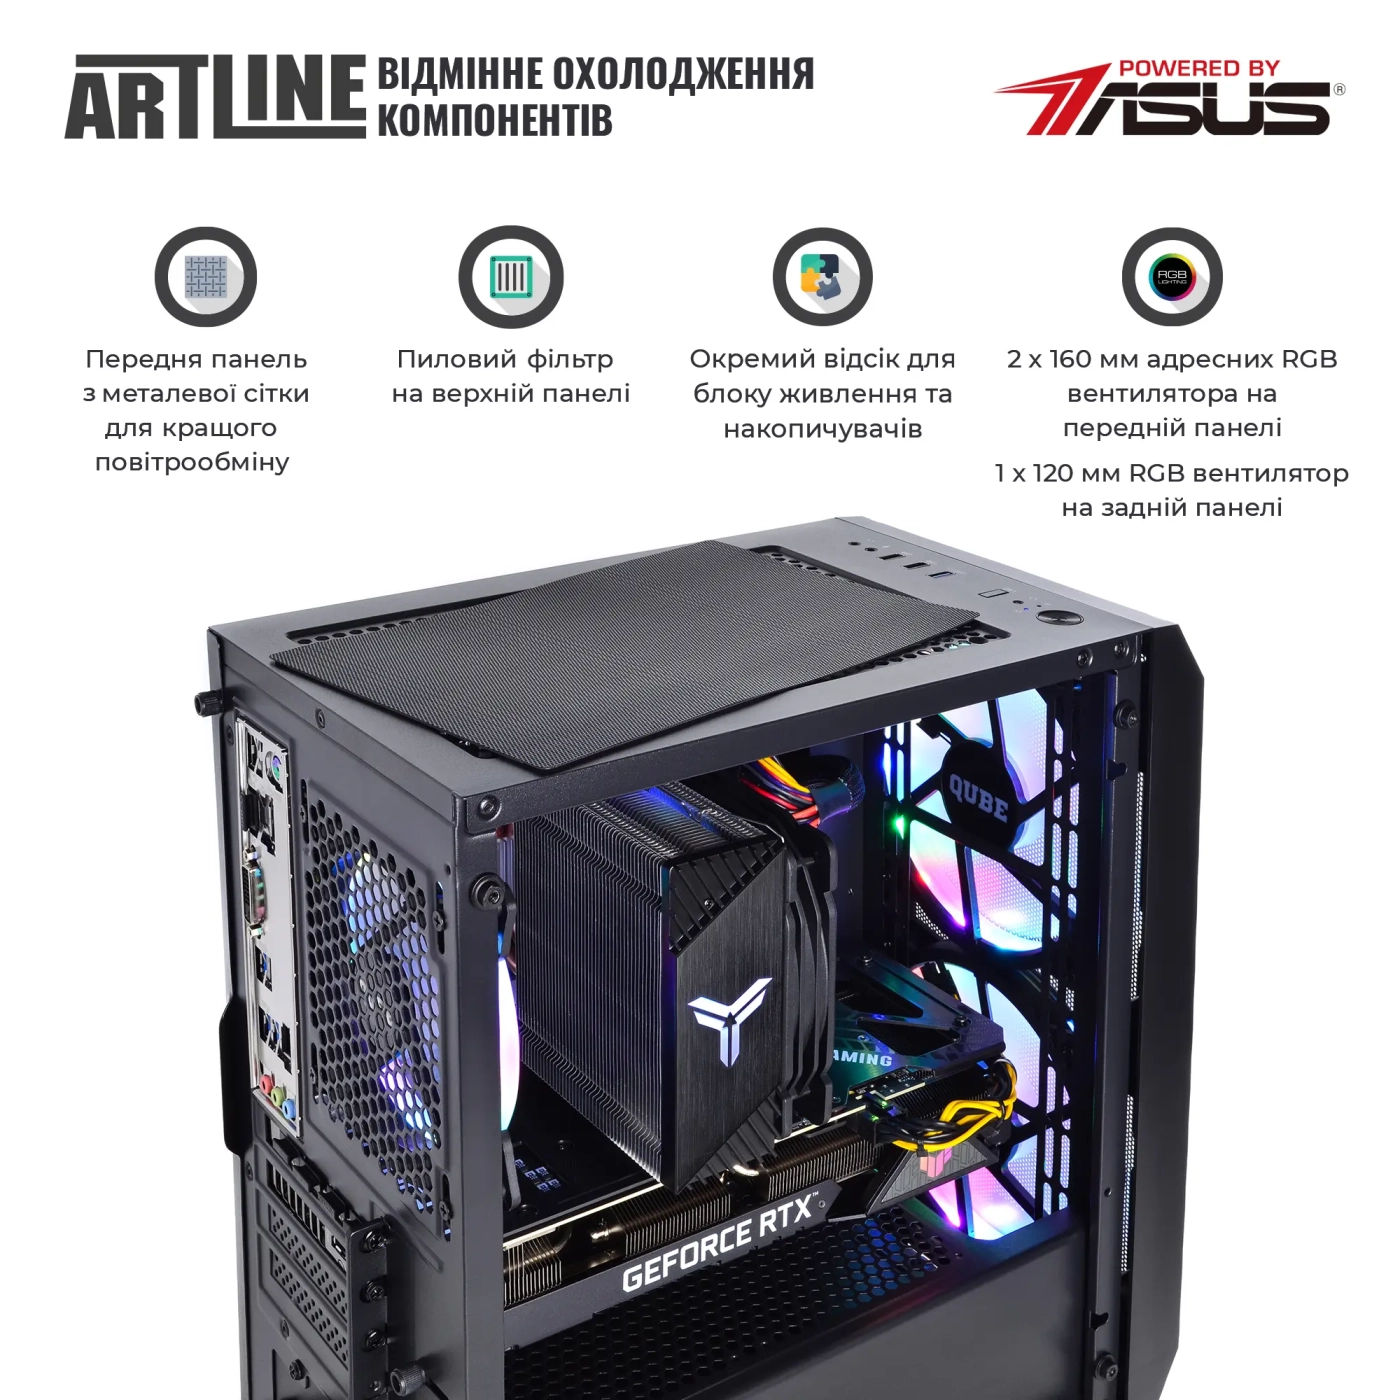 Купить Компьютер ARTLINE Gaming X75v70 - фото 4